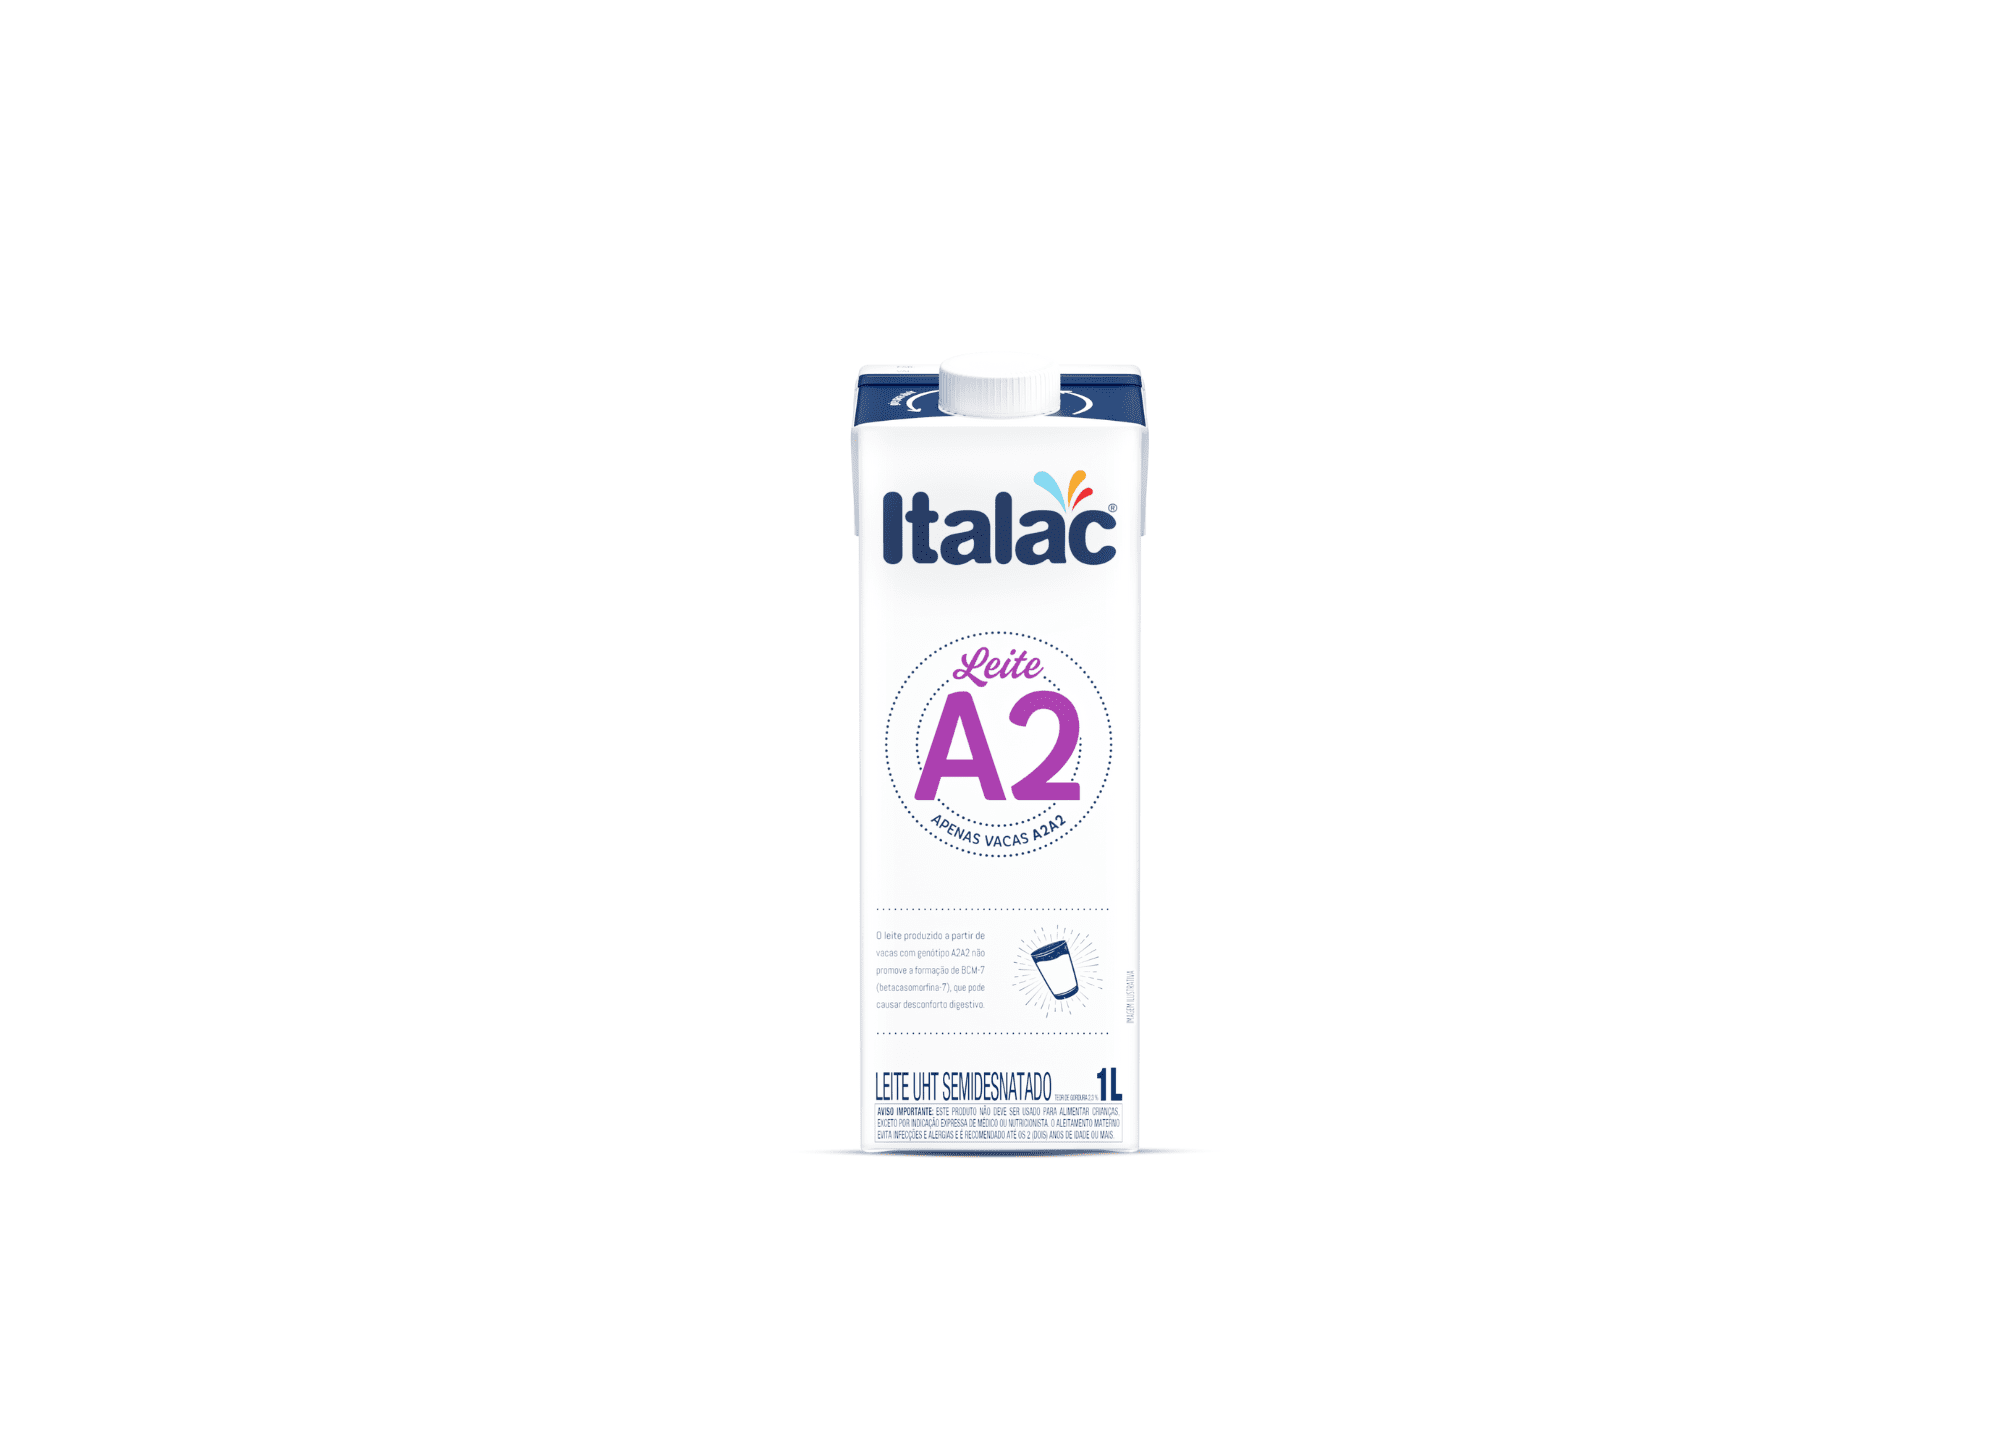 Featured image for “Italac lança leite A2 em embalagem cartonada da Tetra Pak”